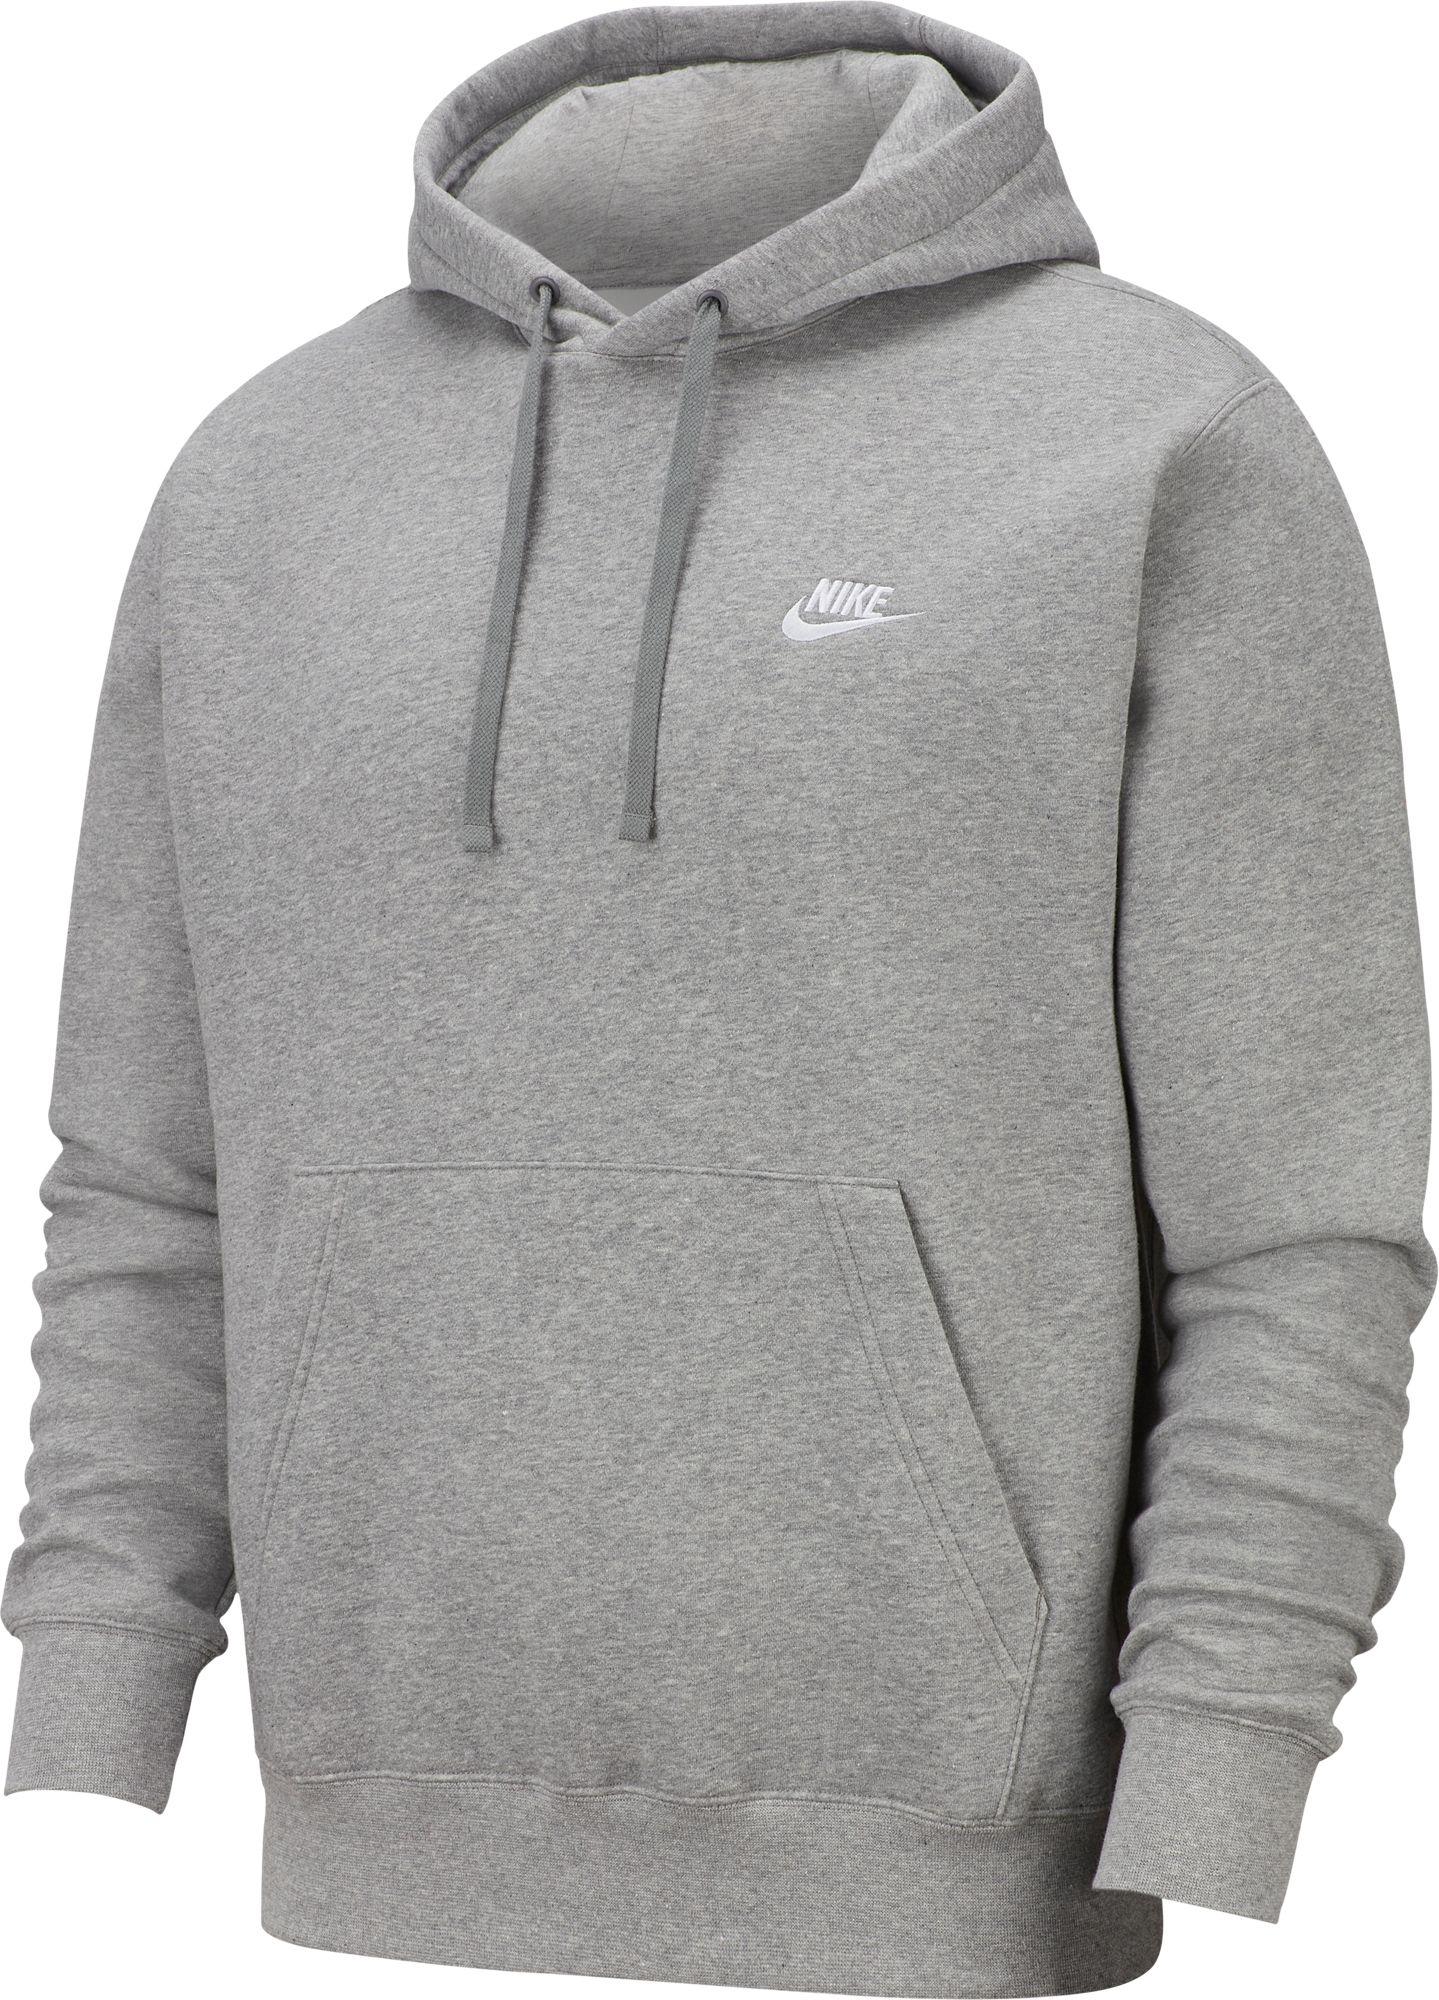 Nike Sportswear Club Fleece Hoodie in Gray for Men - Lyst